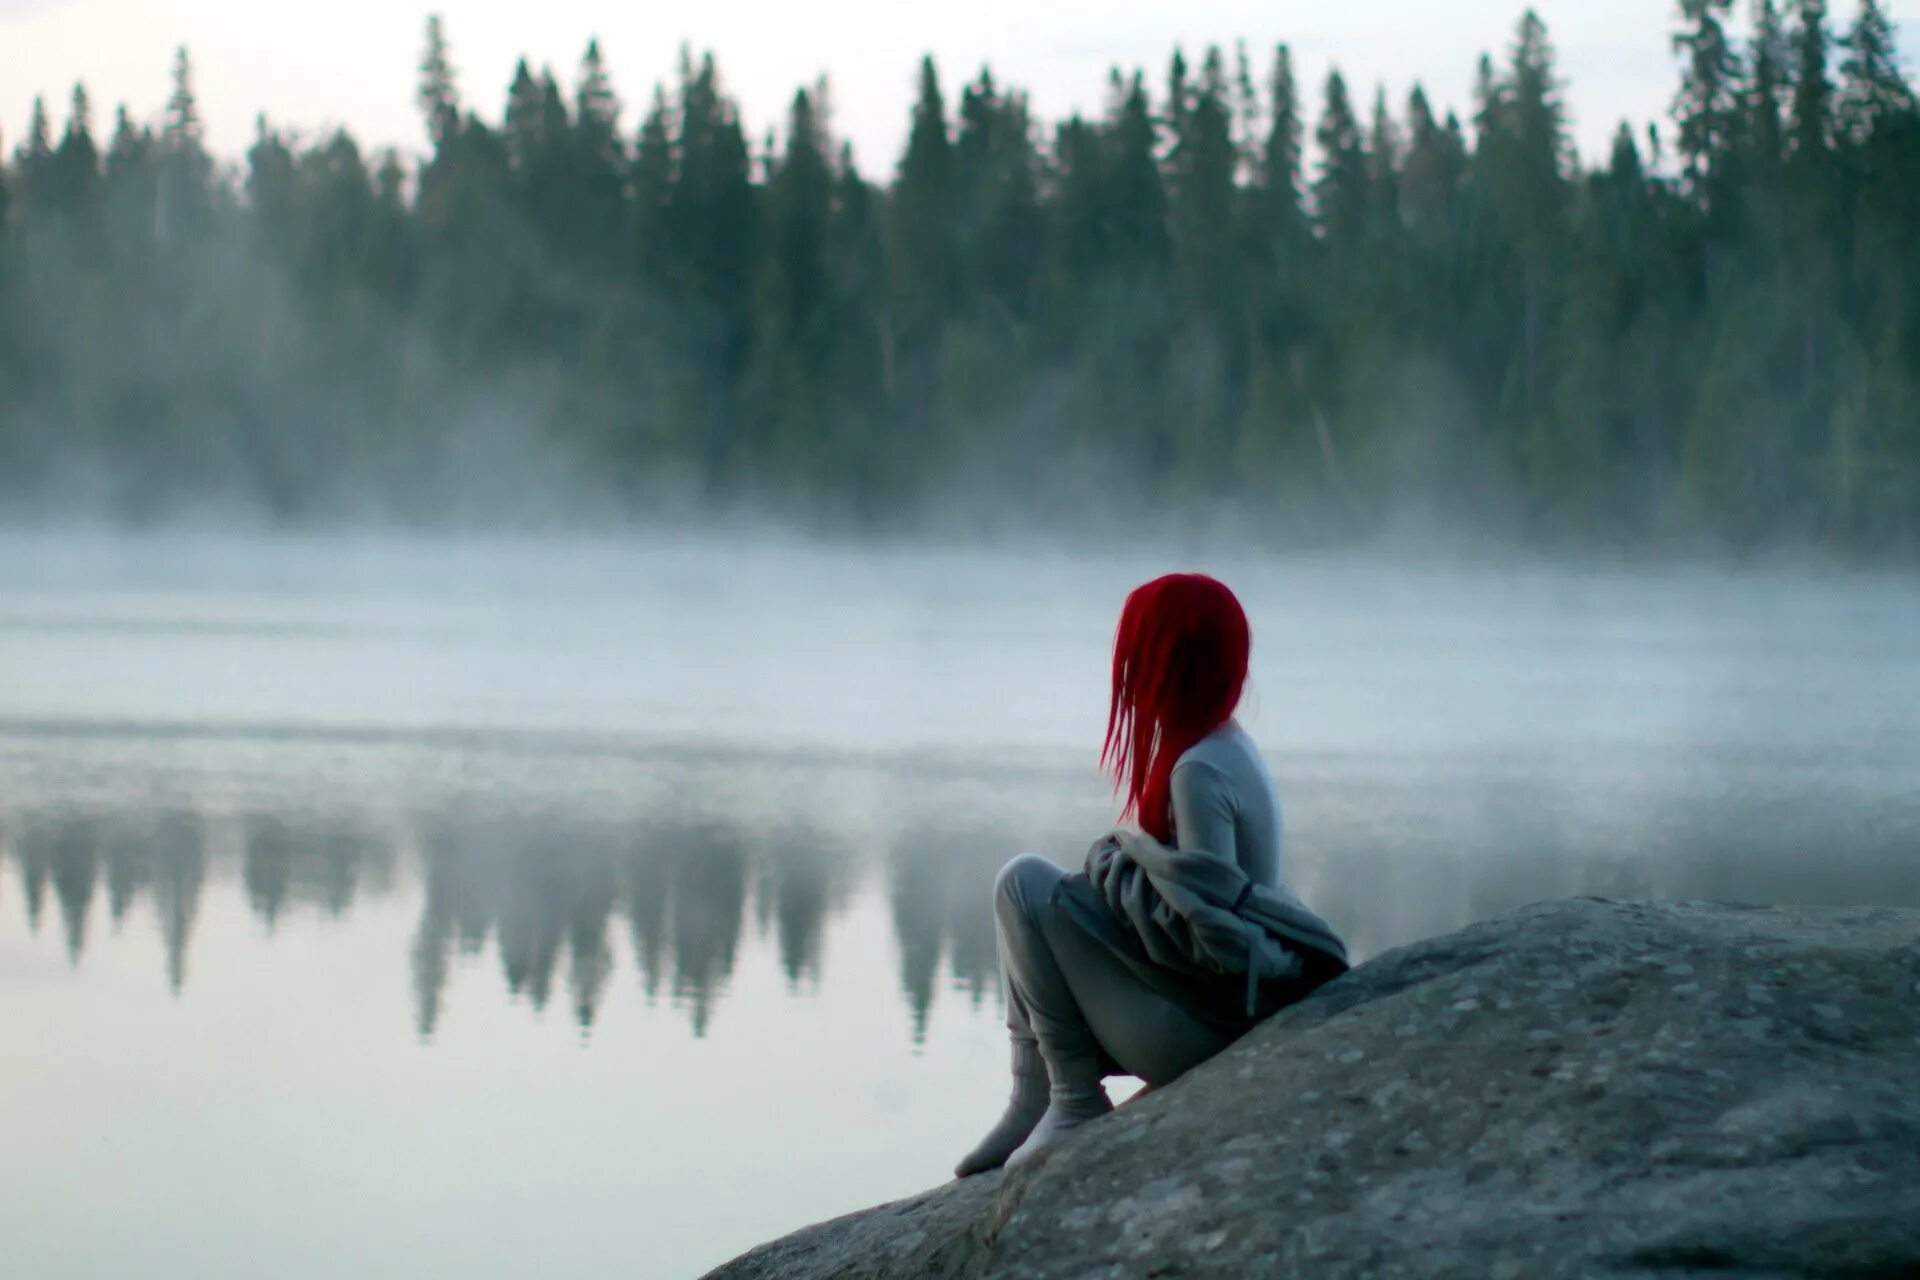 Снова одинока я сижу поет девушка. Уединение с природой. Одинокая девушка. Девушки на озере. Девушка с красными волосами со спины.